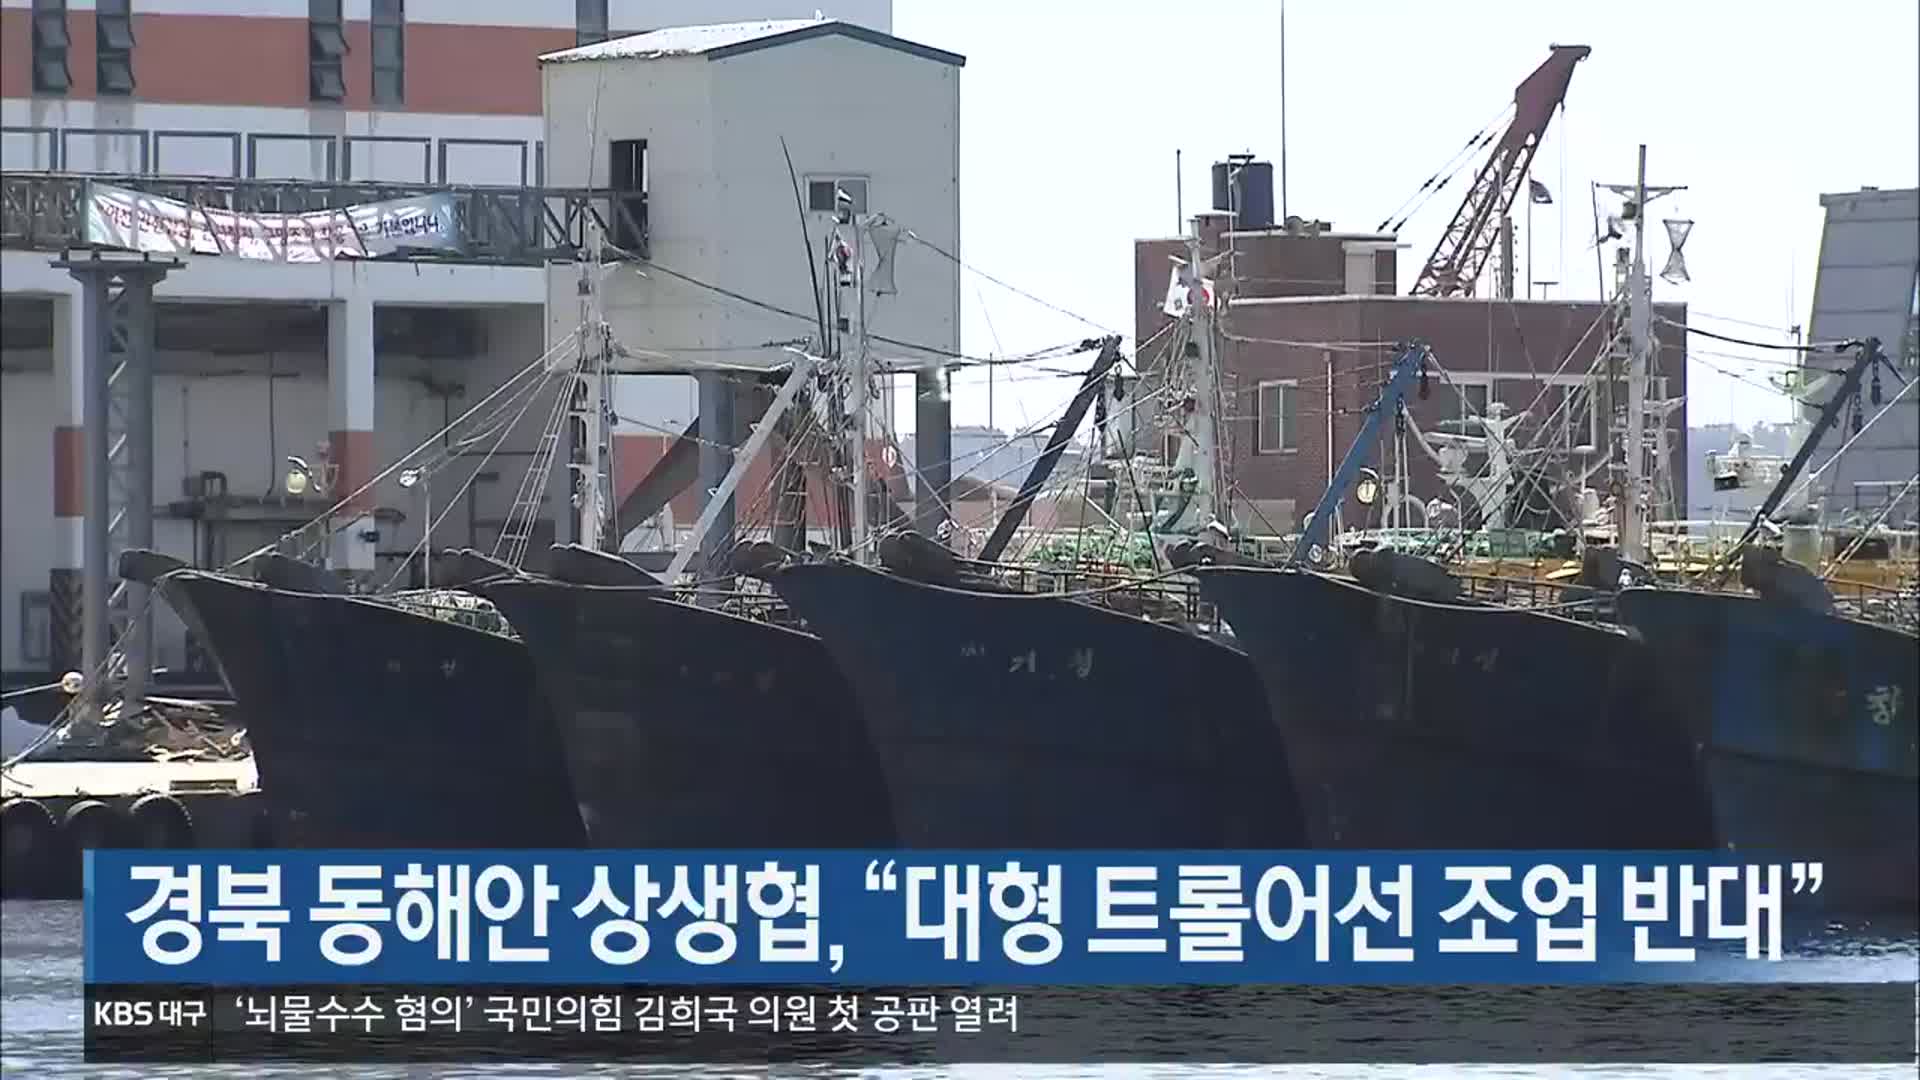 [여기는 포항] 경북 동해안 상생협, “대형 트롤어선 조업 반대” 외